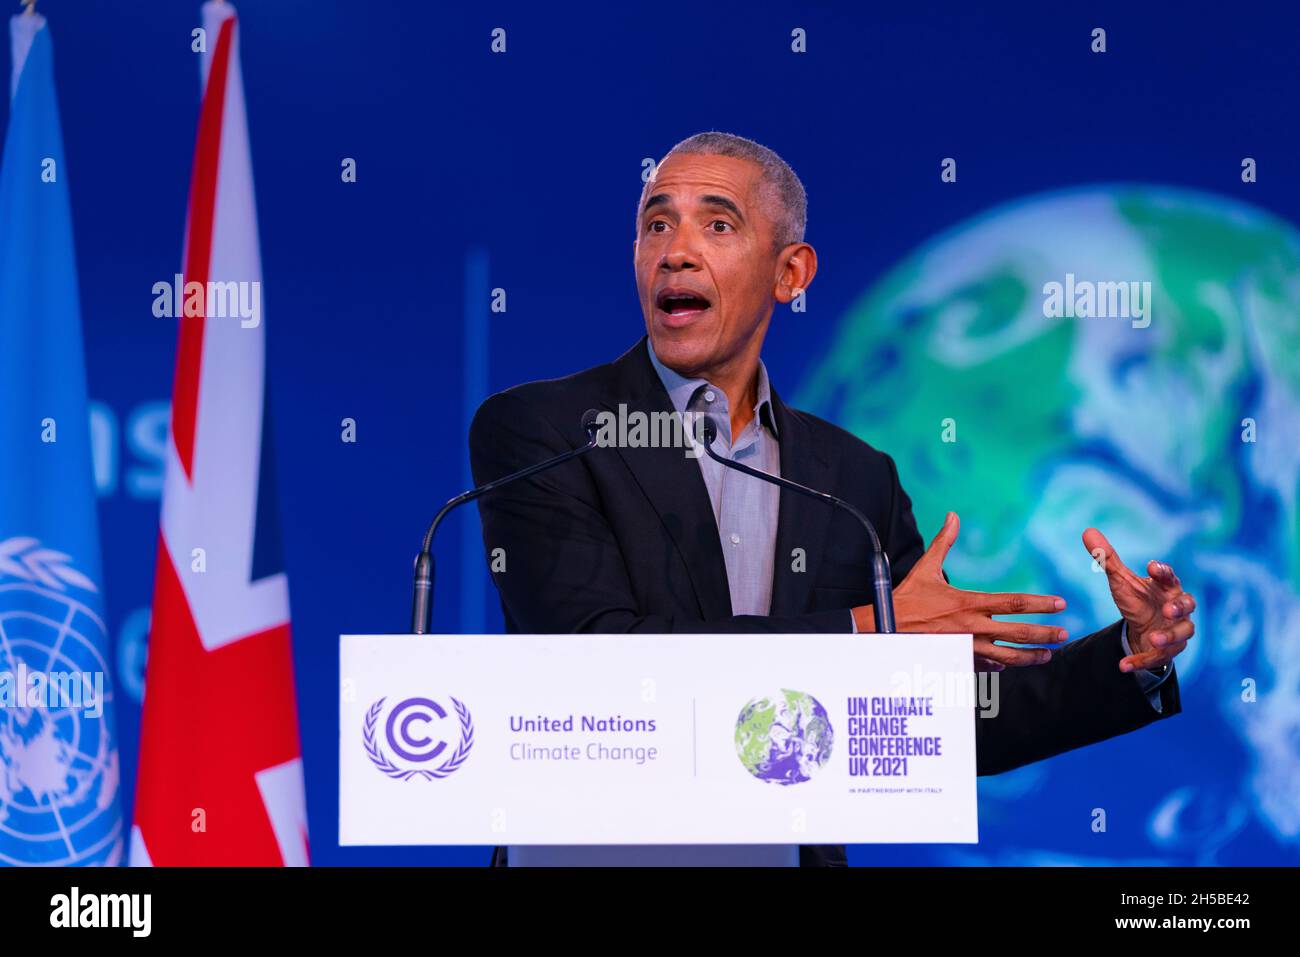 Glasgow, Écosse, Royaume-Uni.8 novembre 2021.L'ancien président américain Barack Obama s'adresse aujourd'hui aux délégués à la conférence des Nations unies sur le changement climatique COP26 à Glasgow.Iain Masterton/Alay Live News. Banque D'Images